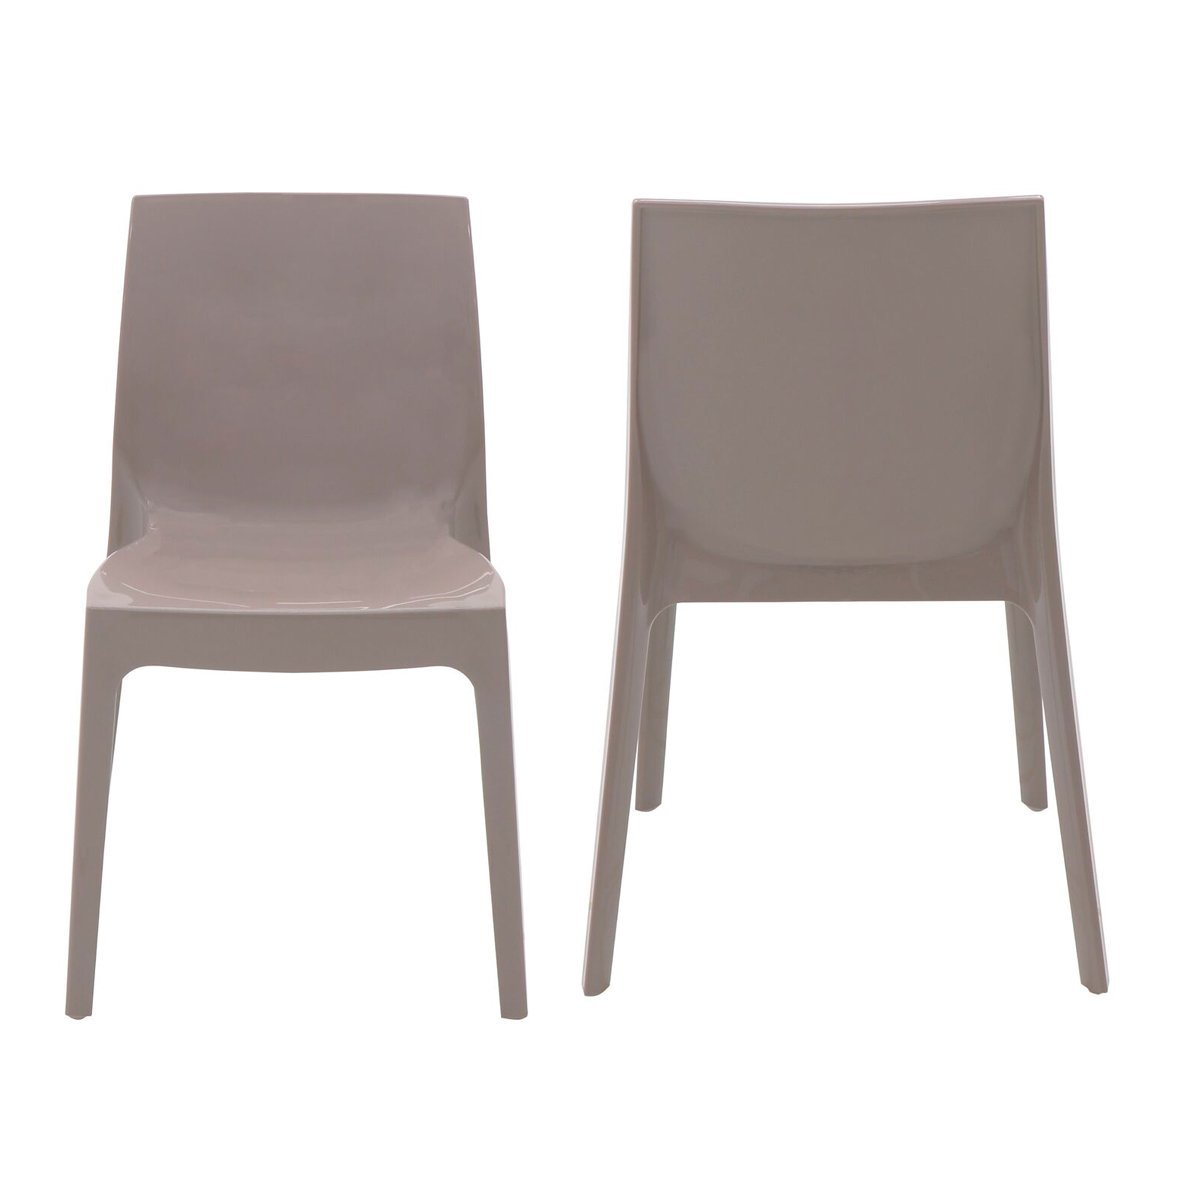 Conjunto 4 Cadeiras de Plástico Polipropileno Brilho Alice Summa - Tramontina - Camurça 92037/210 - 2